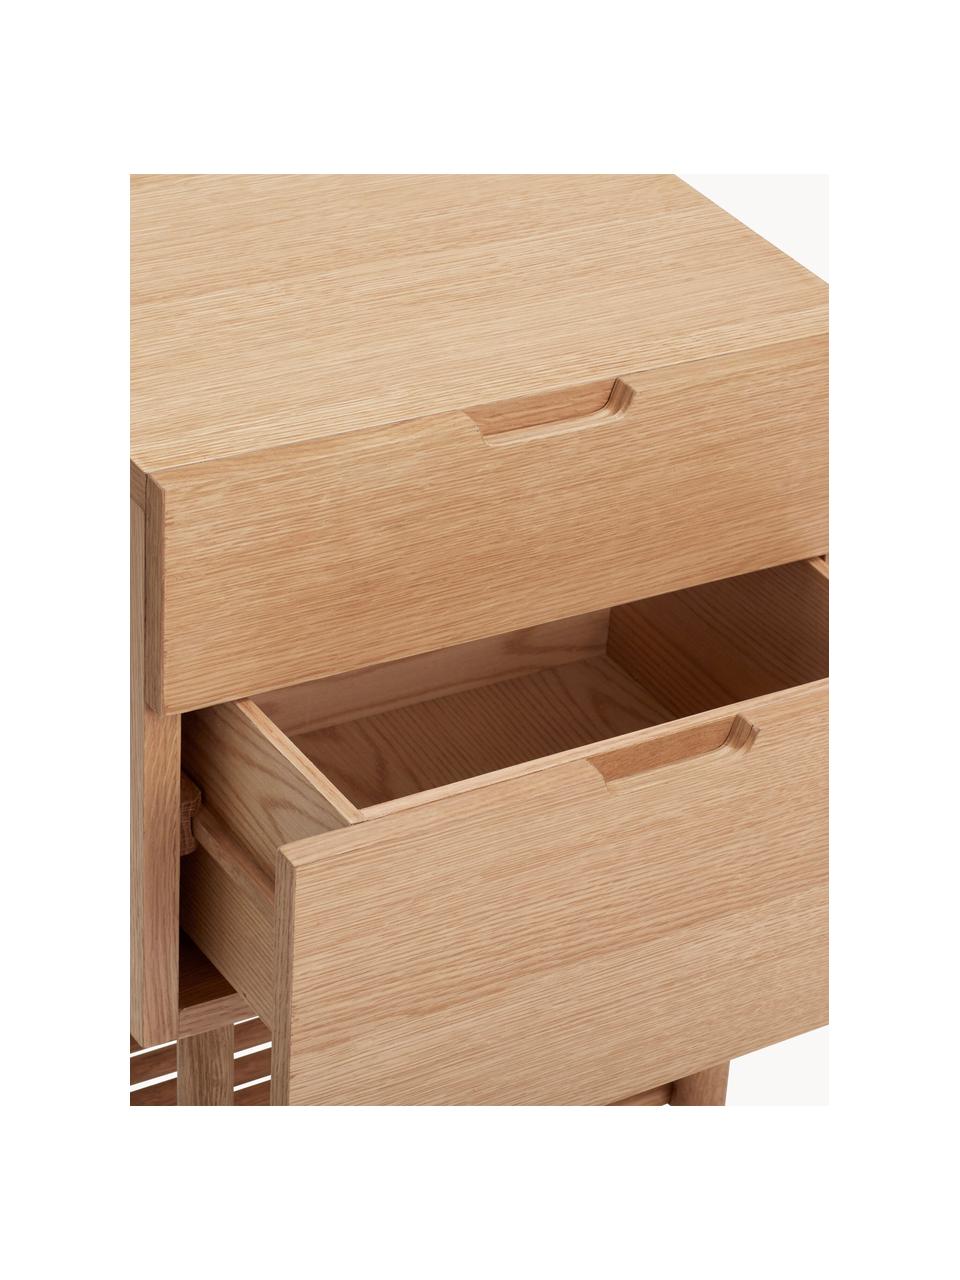 Dřevěný noční stolek Acorn, Dubová dýha, dubové dřevo

Tento produkt je vyroben z udržitelných zdrojů dřeva s certifikací FSC®., Dubové dřevo, Š 40 cm, V 70 cm